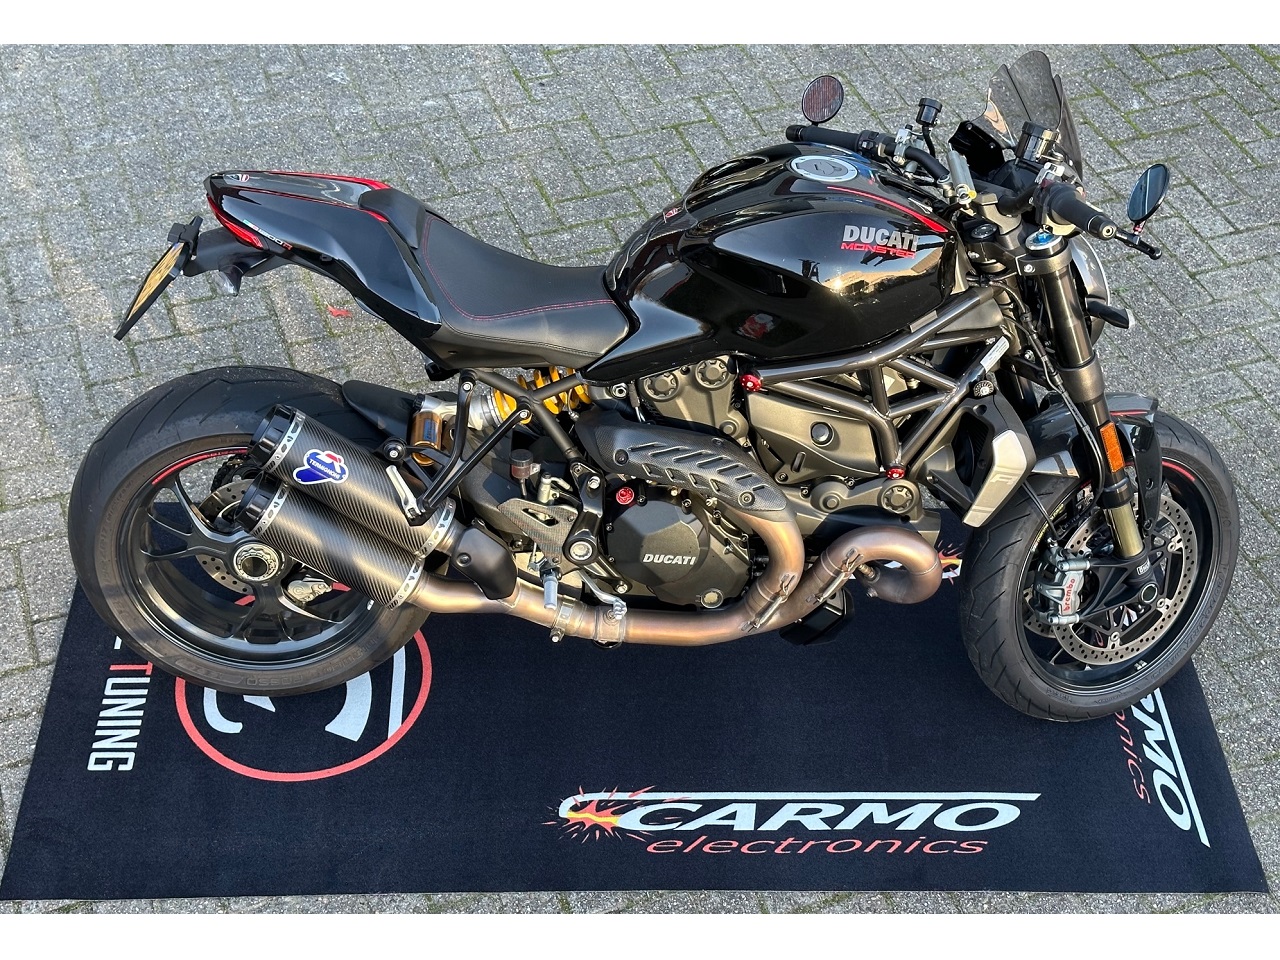 CARMO Motorrad Boxengasse Werkstatt Garage Teppichmatte